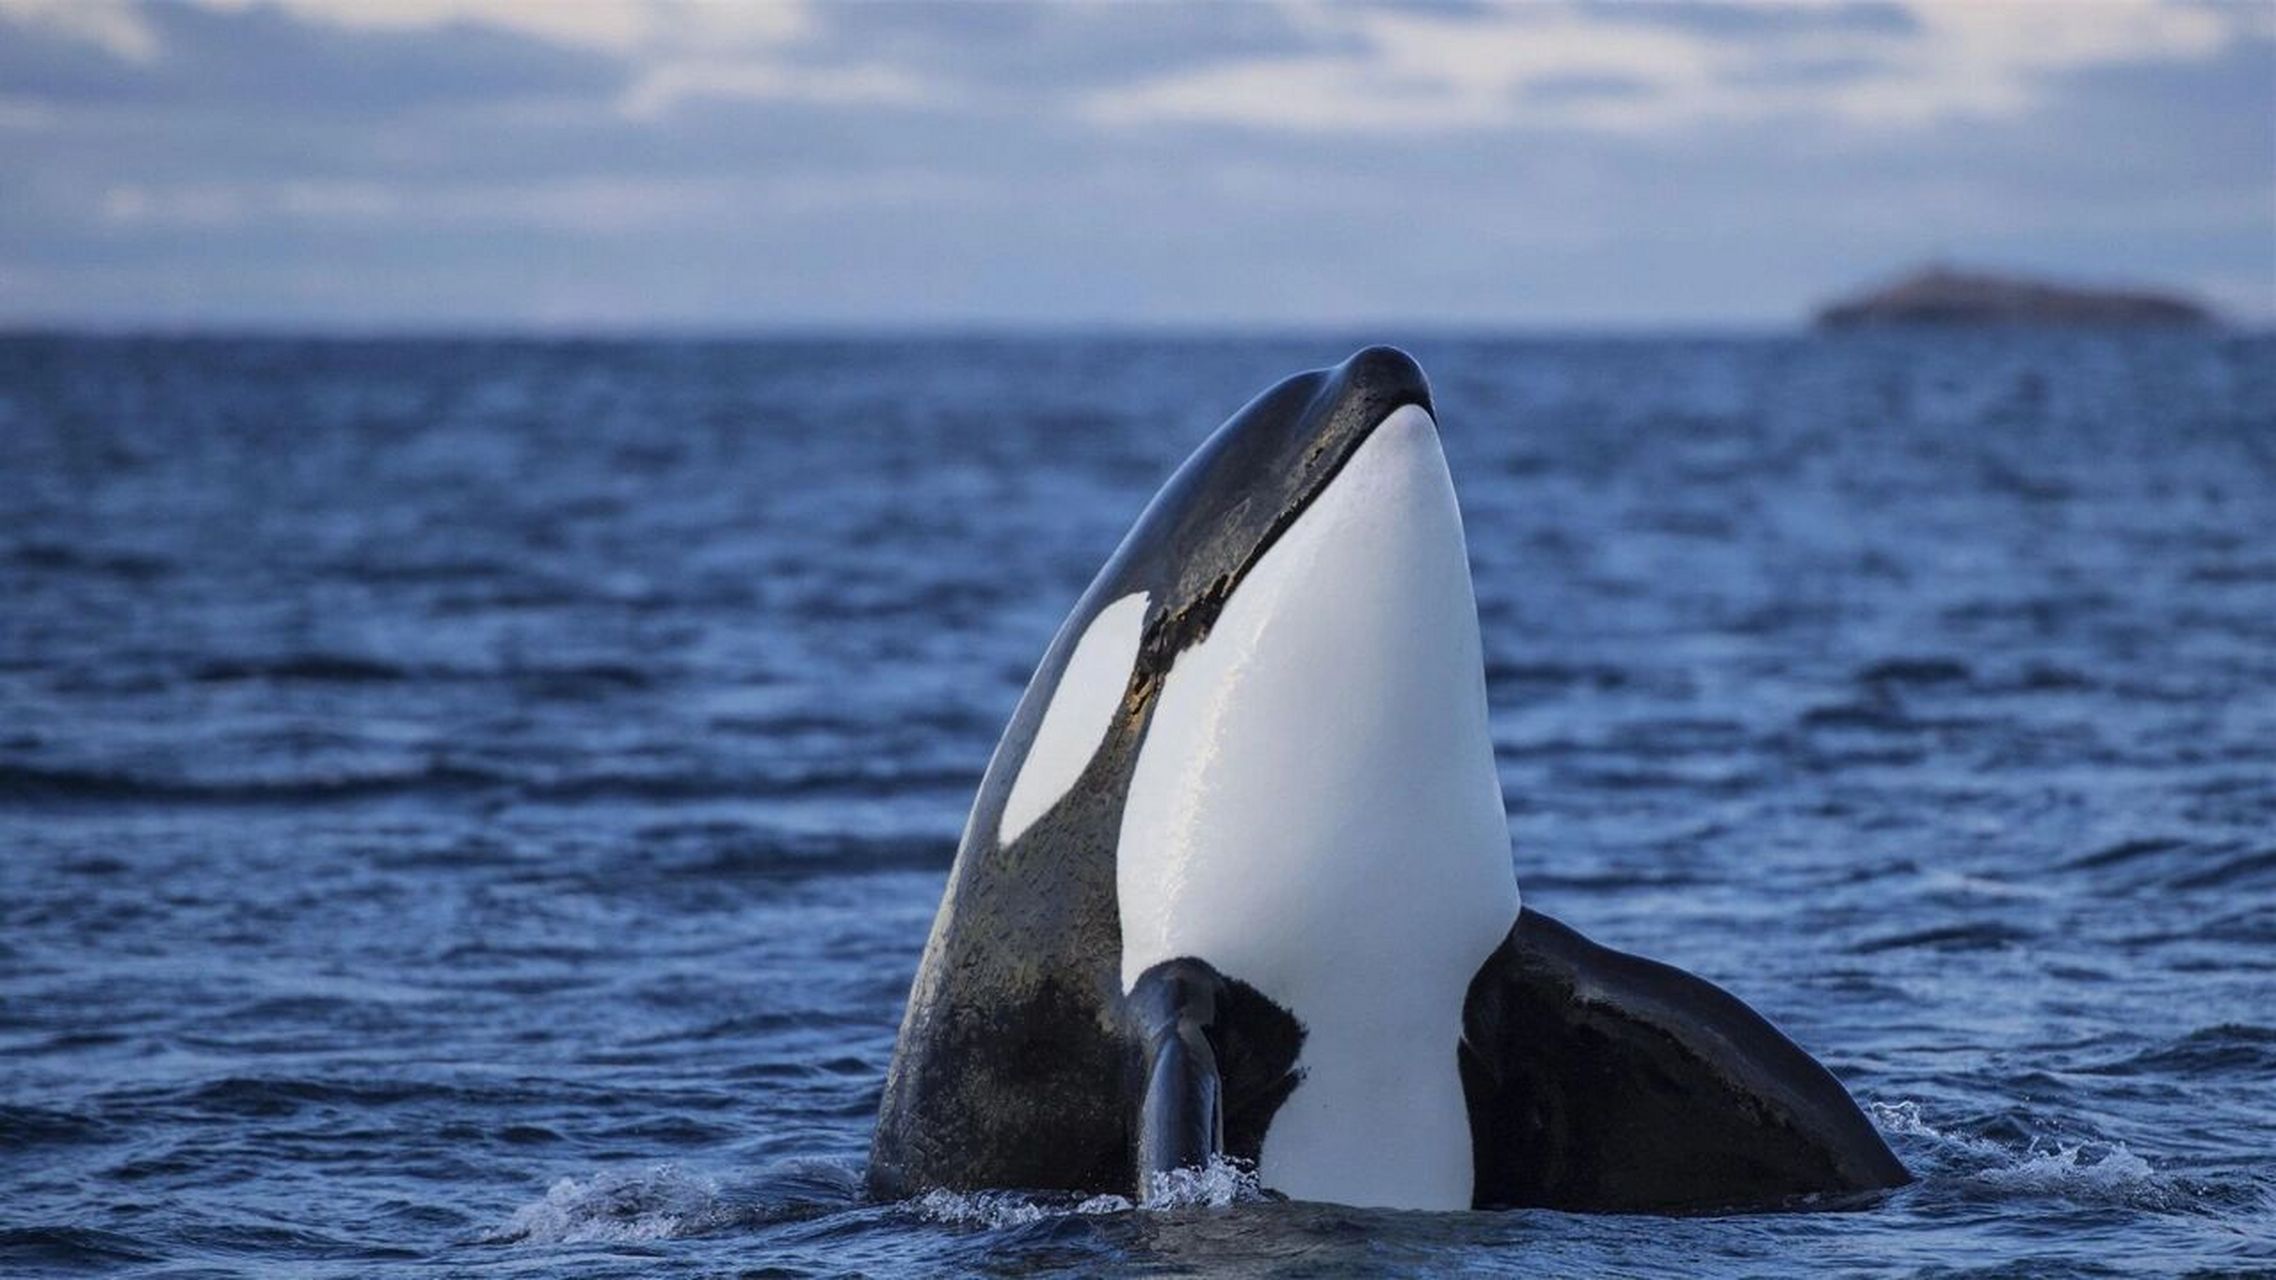 虎鲸,海洋公园里最亮的星,自然界的顶级掠食 鲸鱼是南极旅行的途中最